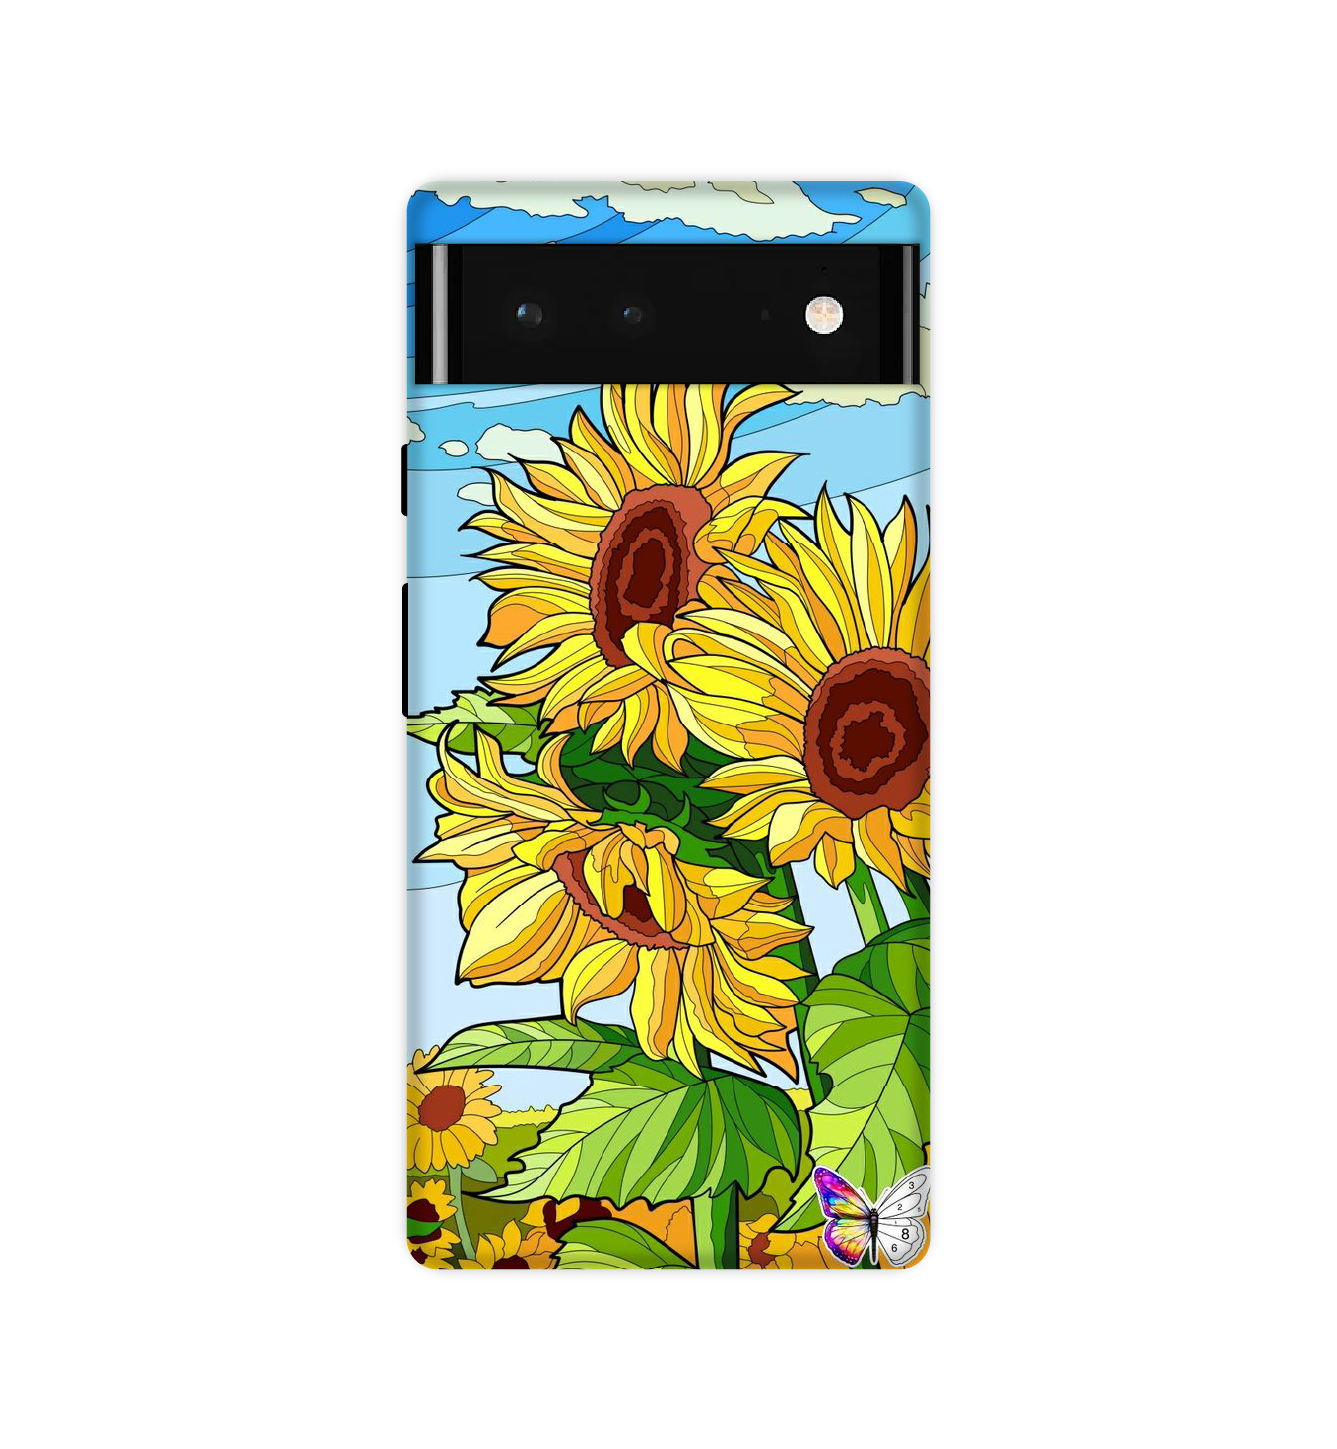 Sunflower - Hard Cases For Google Models